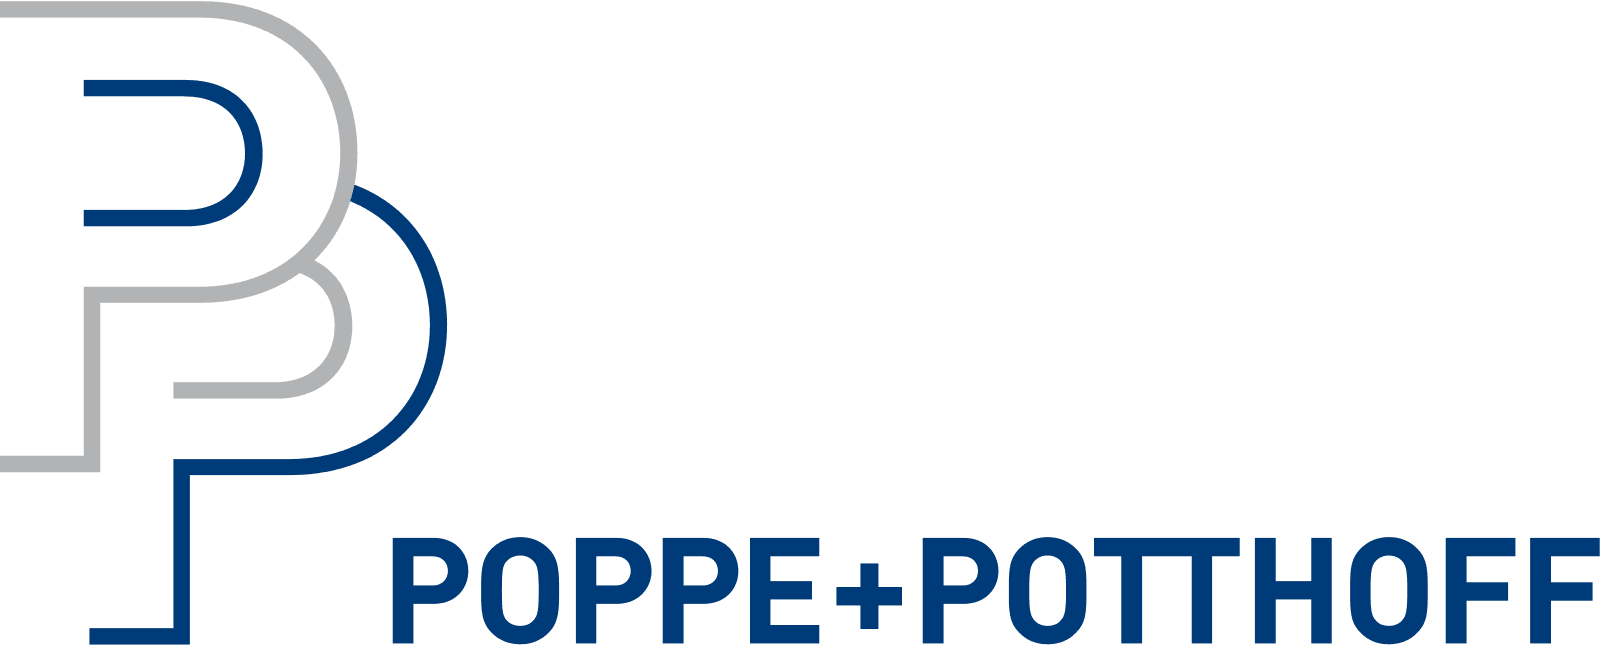 Poppe+Potthoff